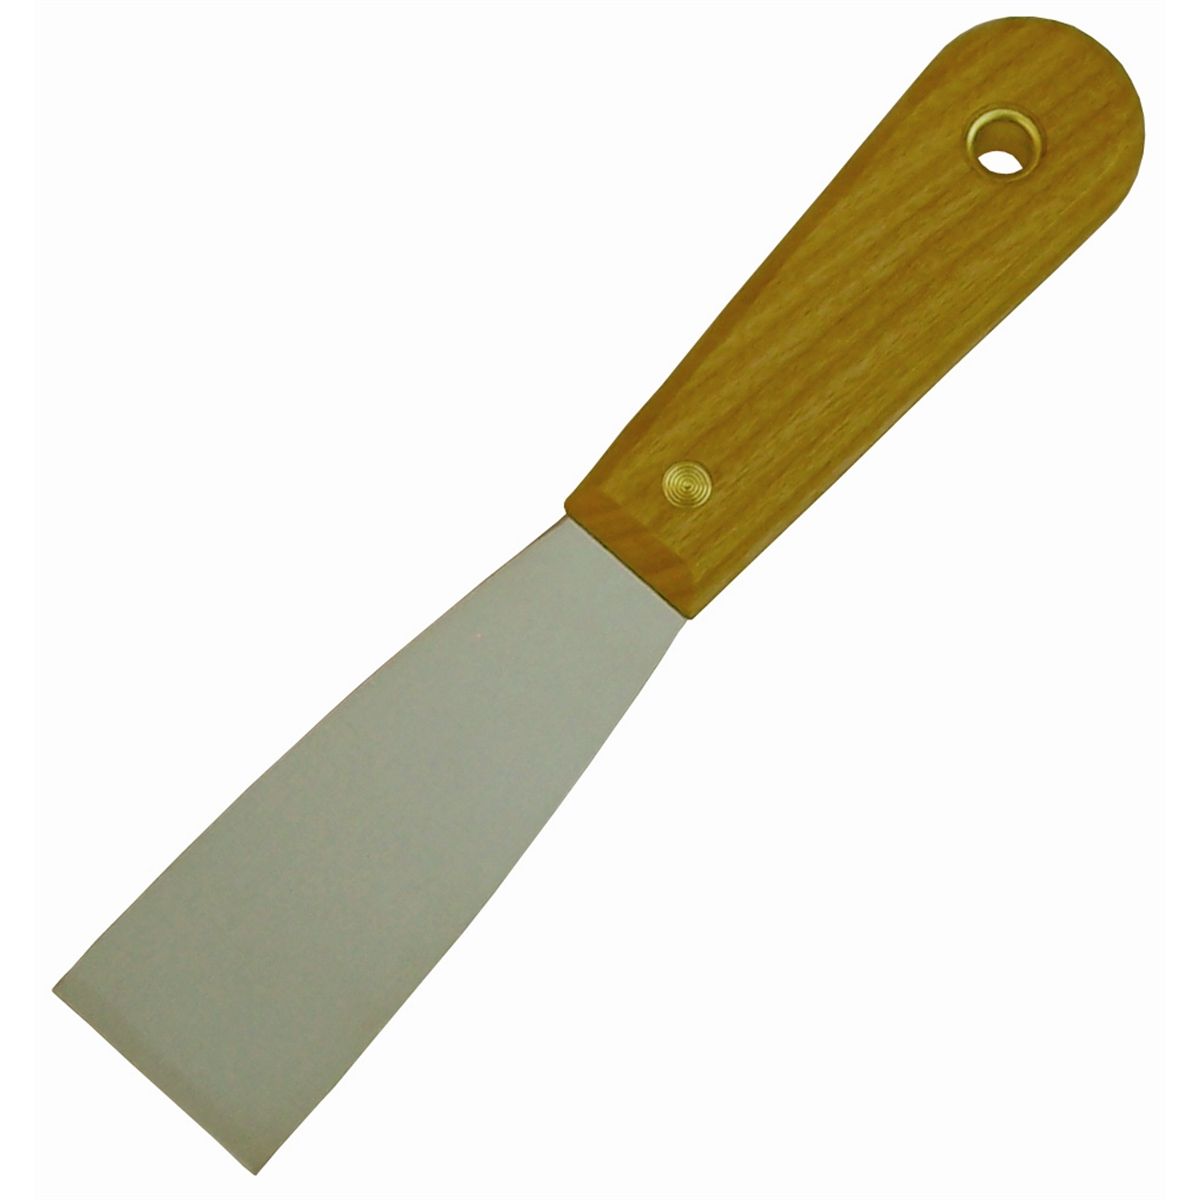 putty knife scraper